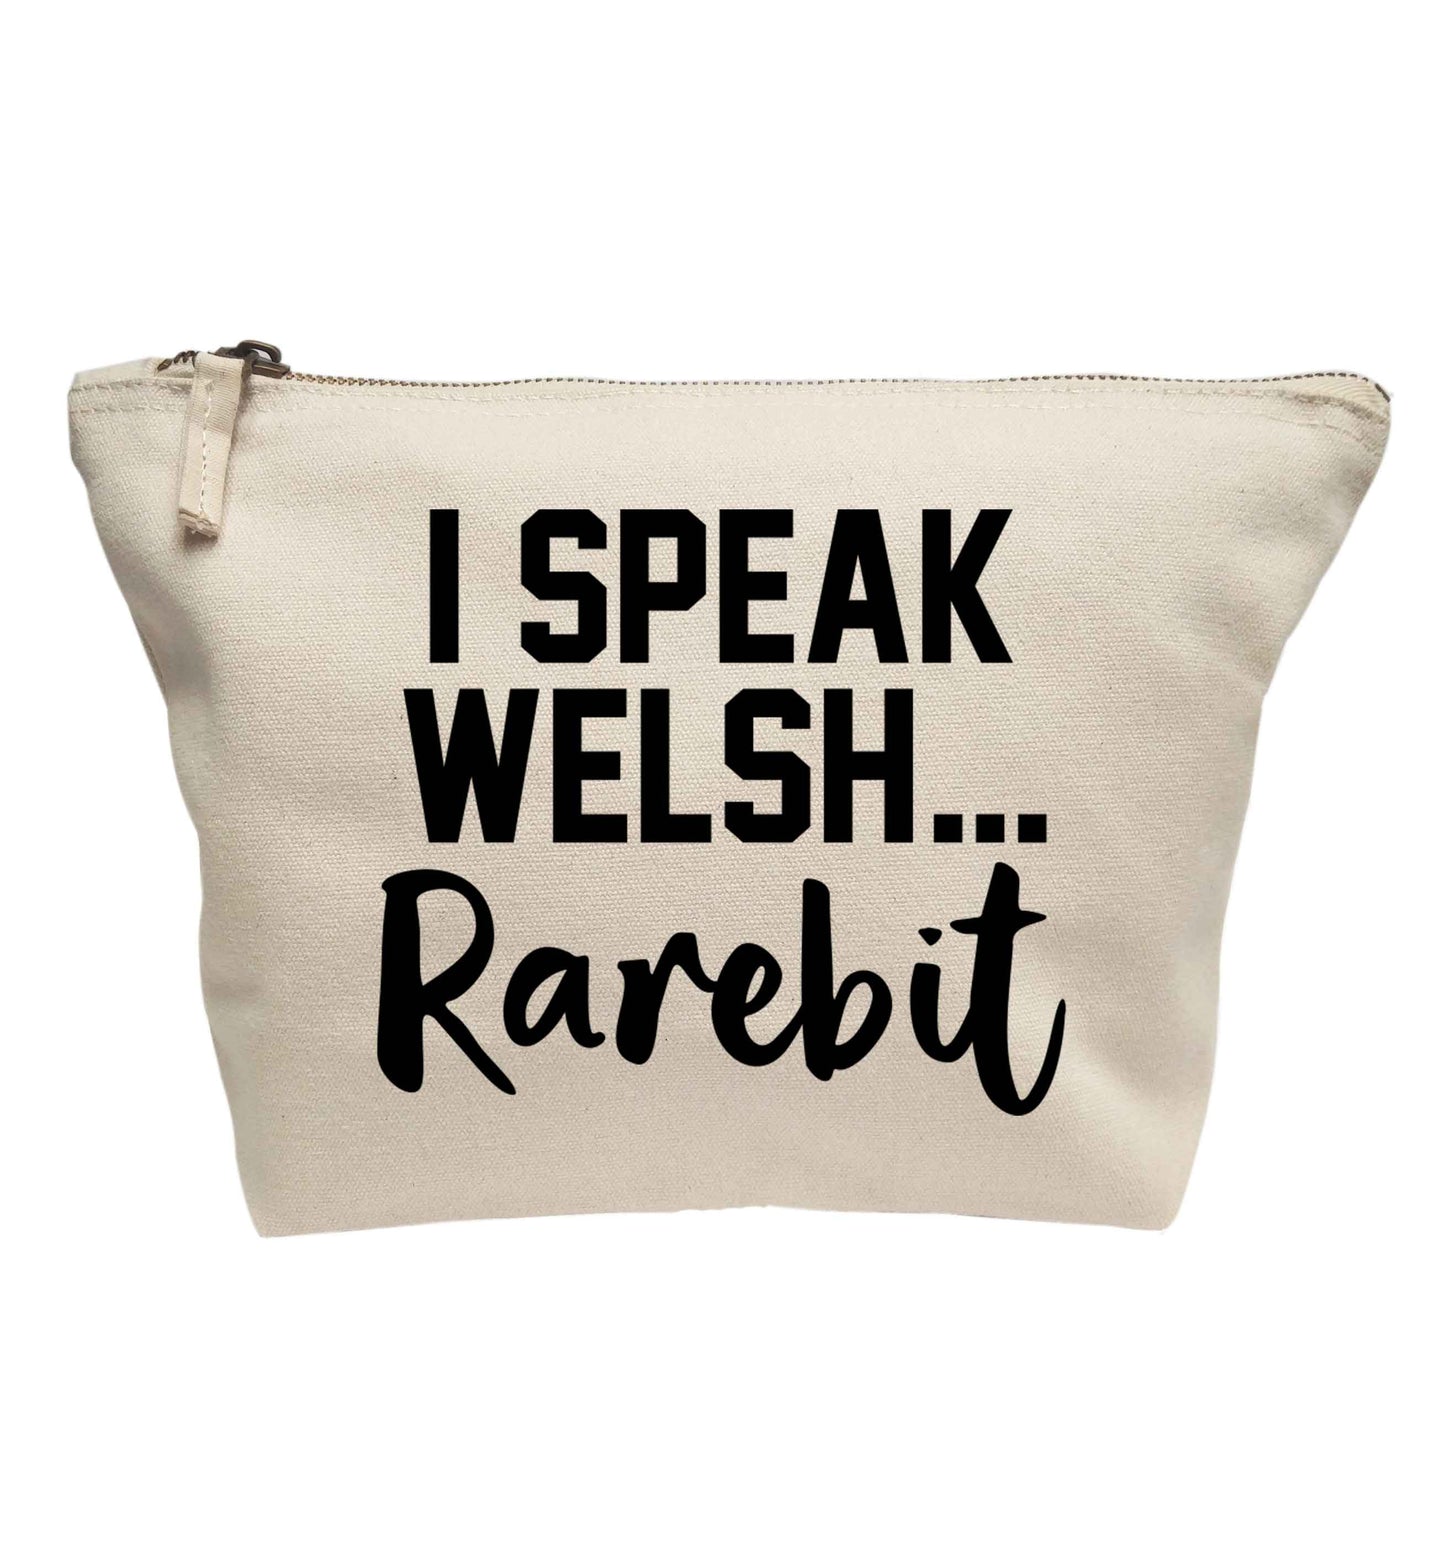 I speak Welsh...rarebit | makeup / wash bag